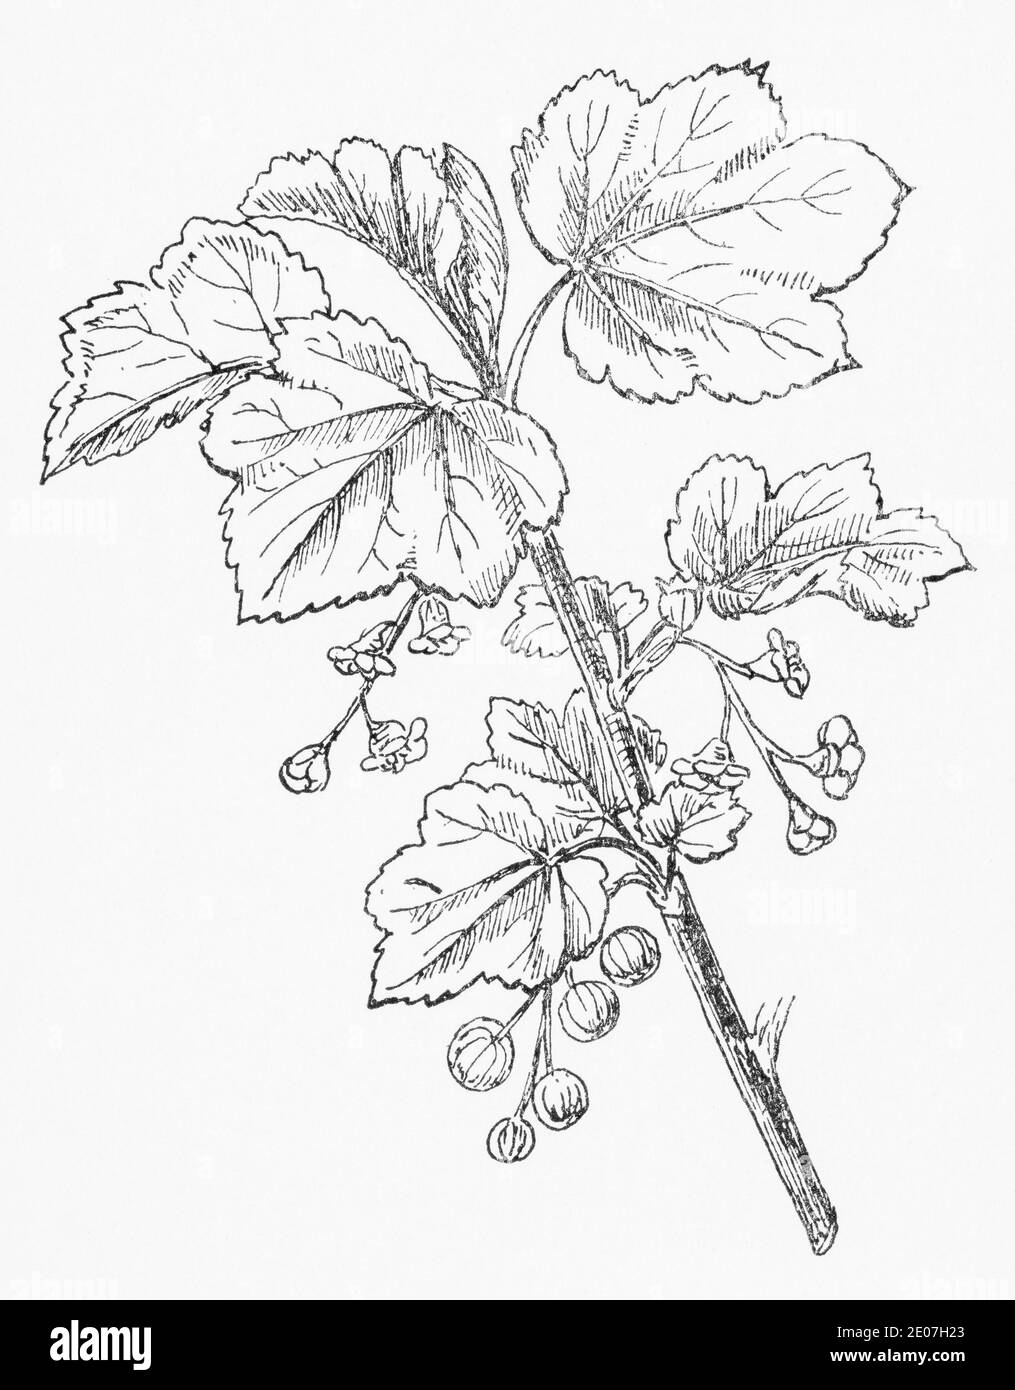 Ancienne gravure d'illustration botanique de Currant rouge, groseille / Ribes rubrum. Plante médicinale traditionnelle. Voir Remarques Banque D'Images